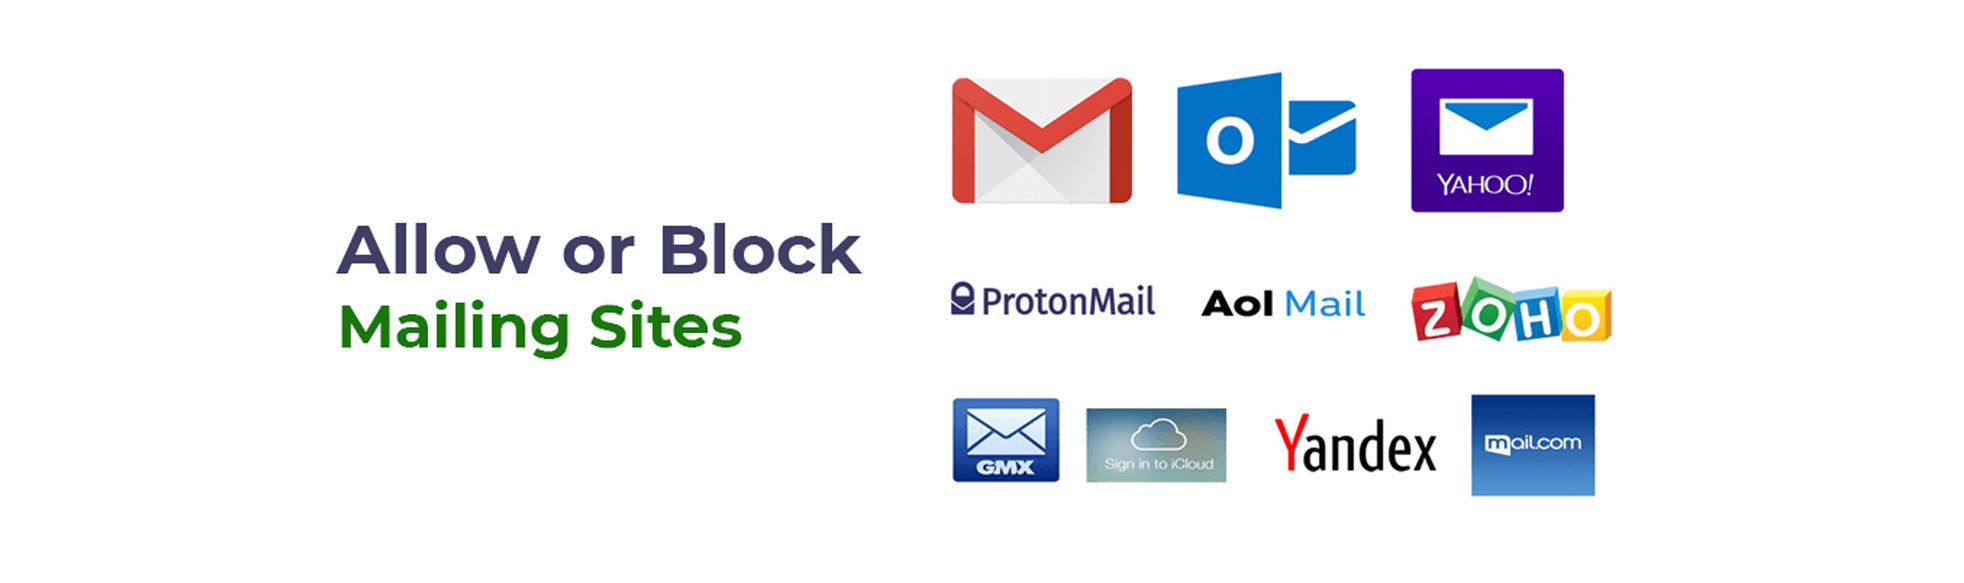 mailing sites blocking